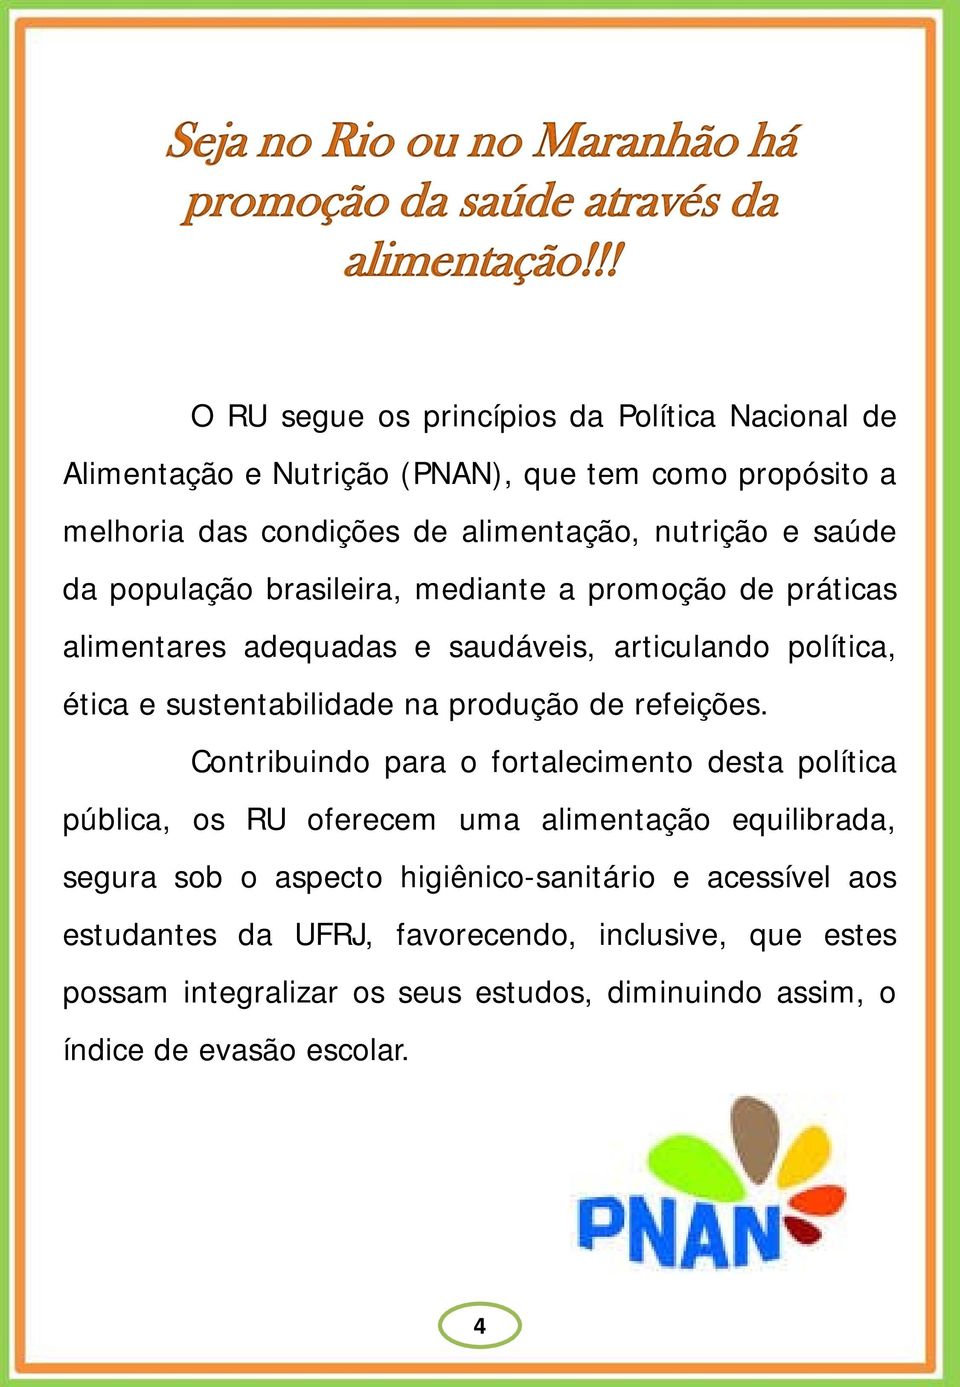 população brasileira, mediante a promoção de práticas alimentares adequadas e saudáveis, articulando política, ética e sustentabilidade na produção de refeições.